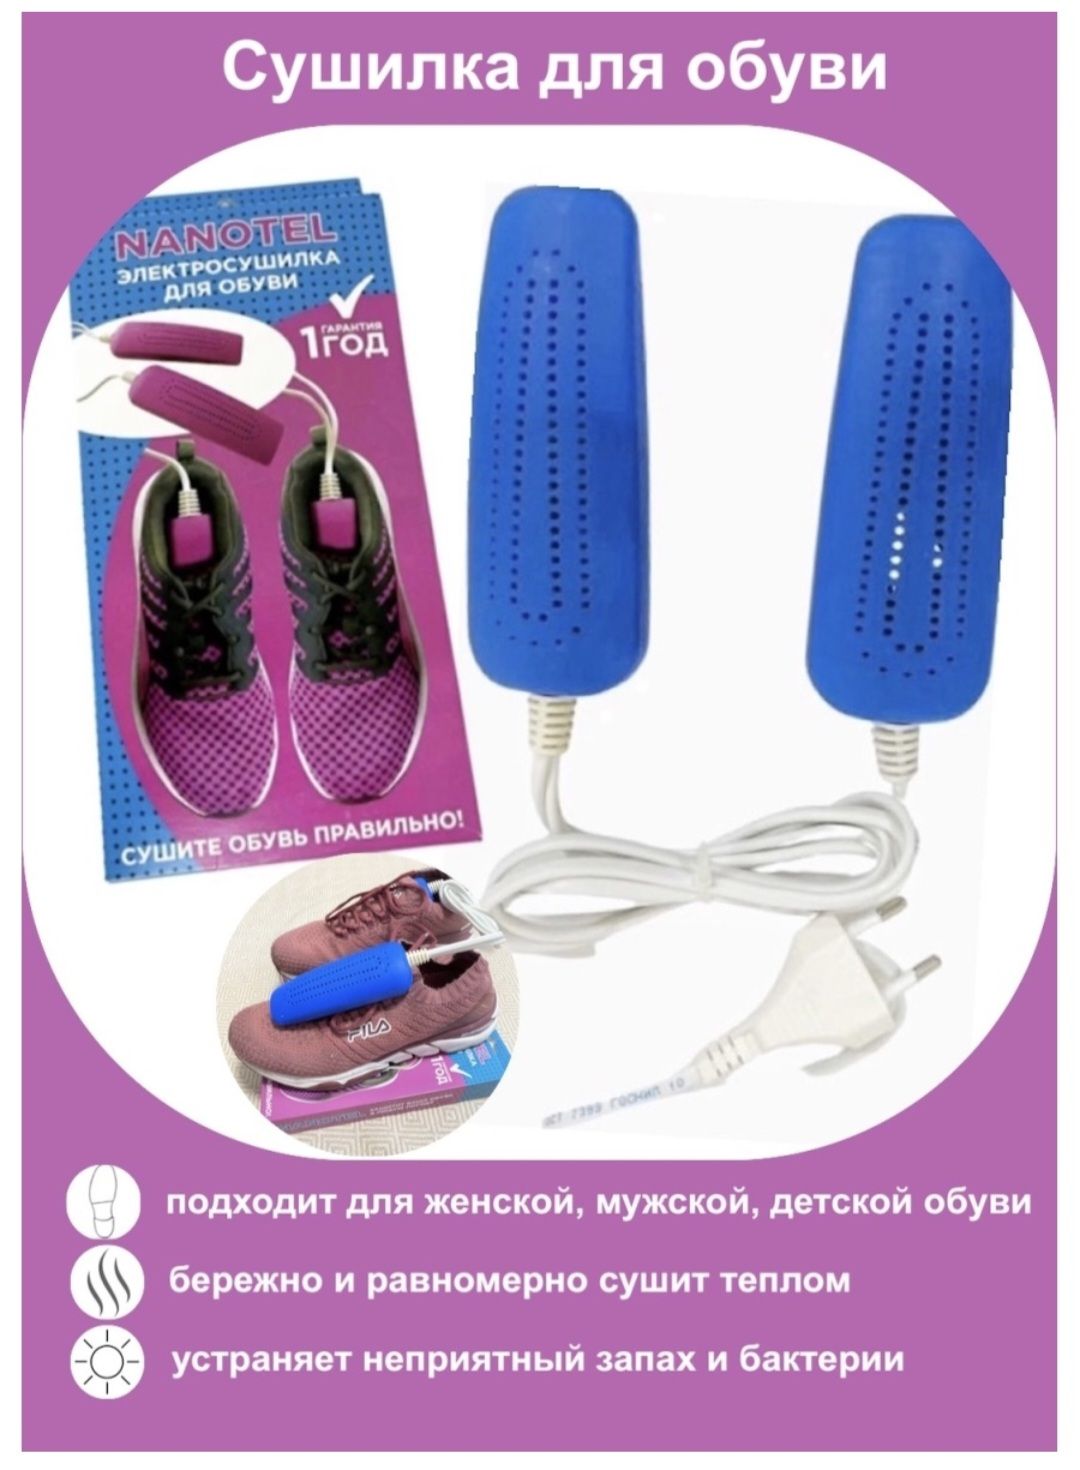 Сушилка Для Обуви Электрическая Купить В Минске